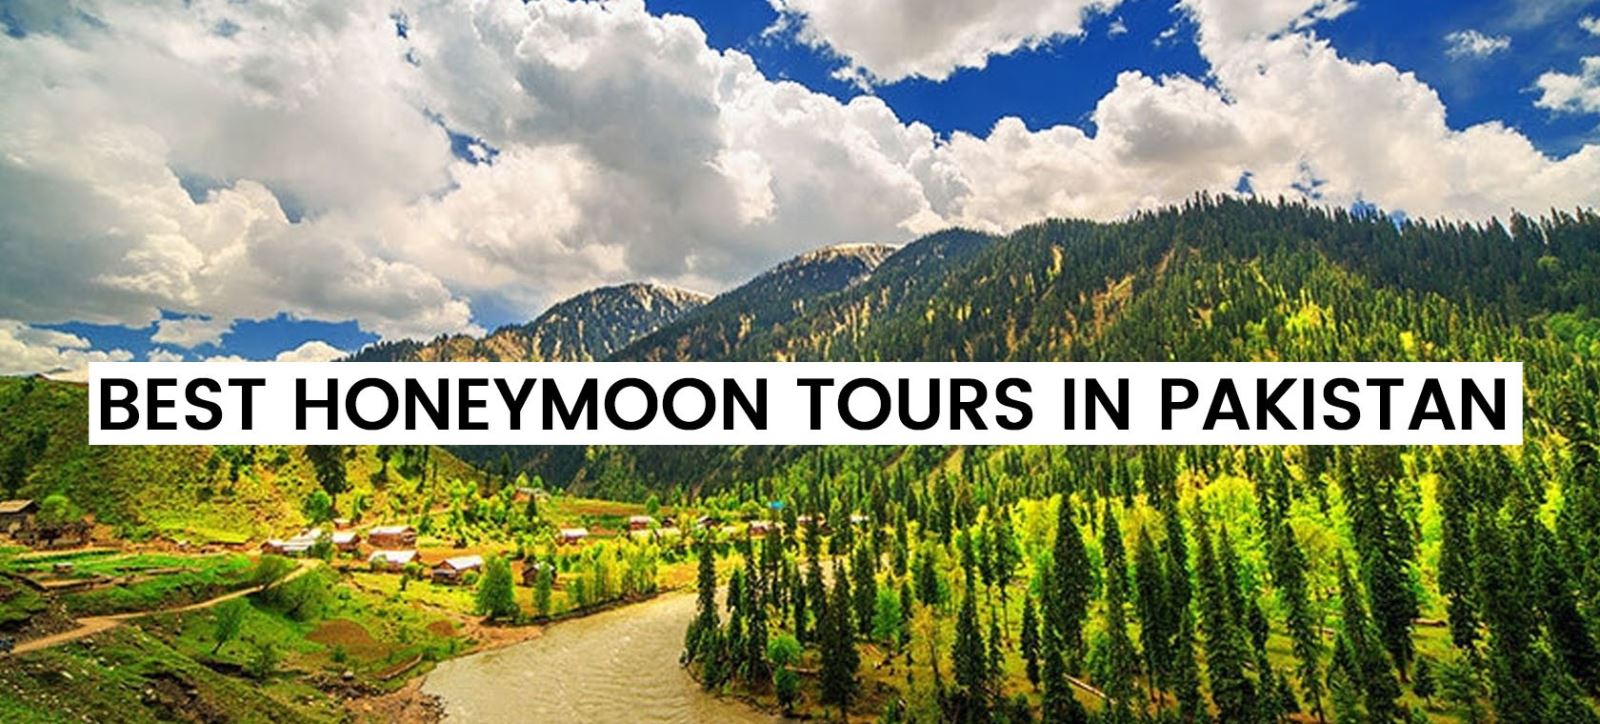 Best Honeymoon Tours in Pakistan